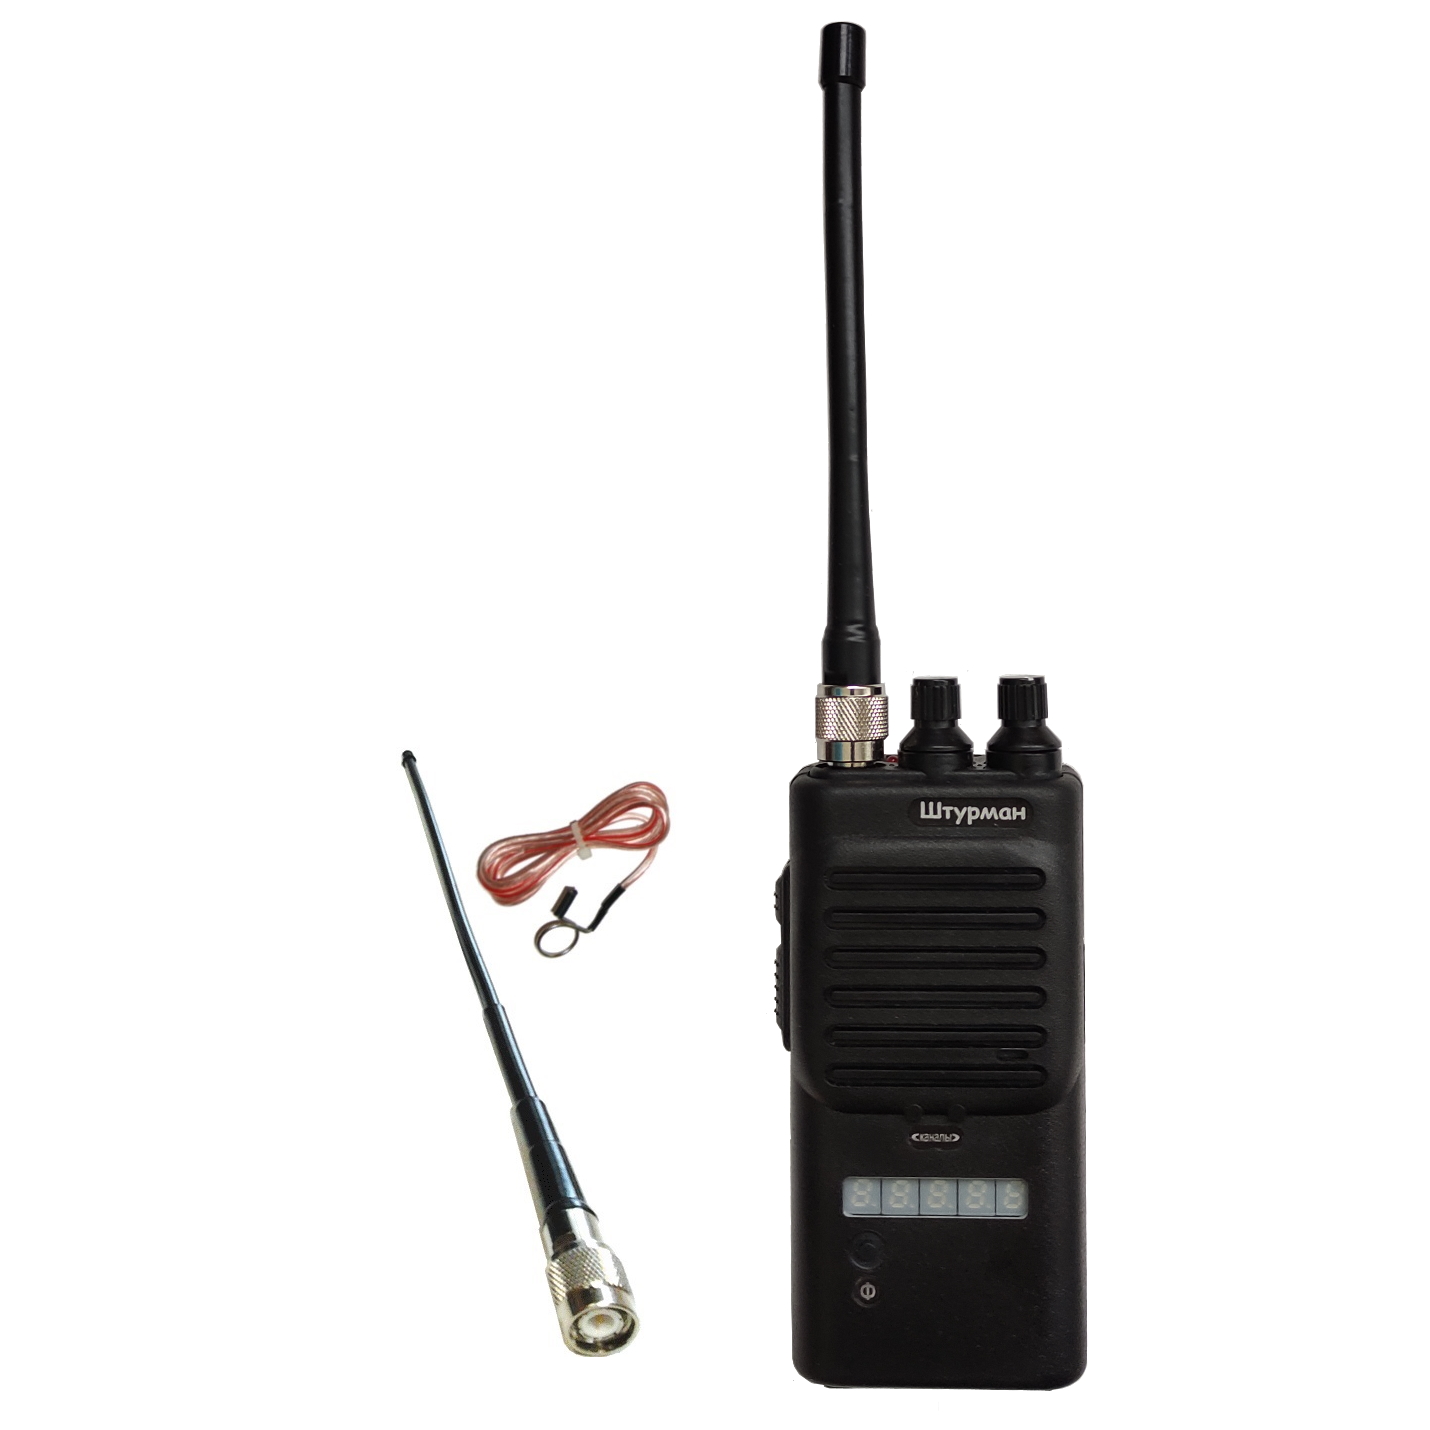 Штурман-Р230М#0 - AM/FM cb радиостанция с функцией репитера